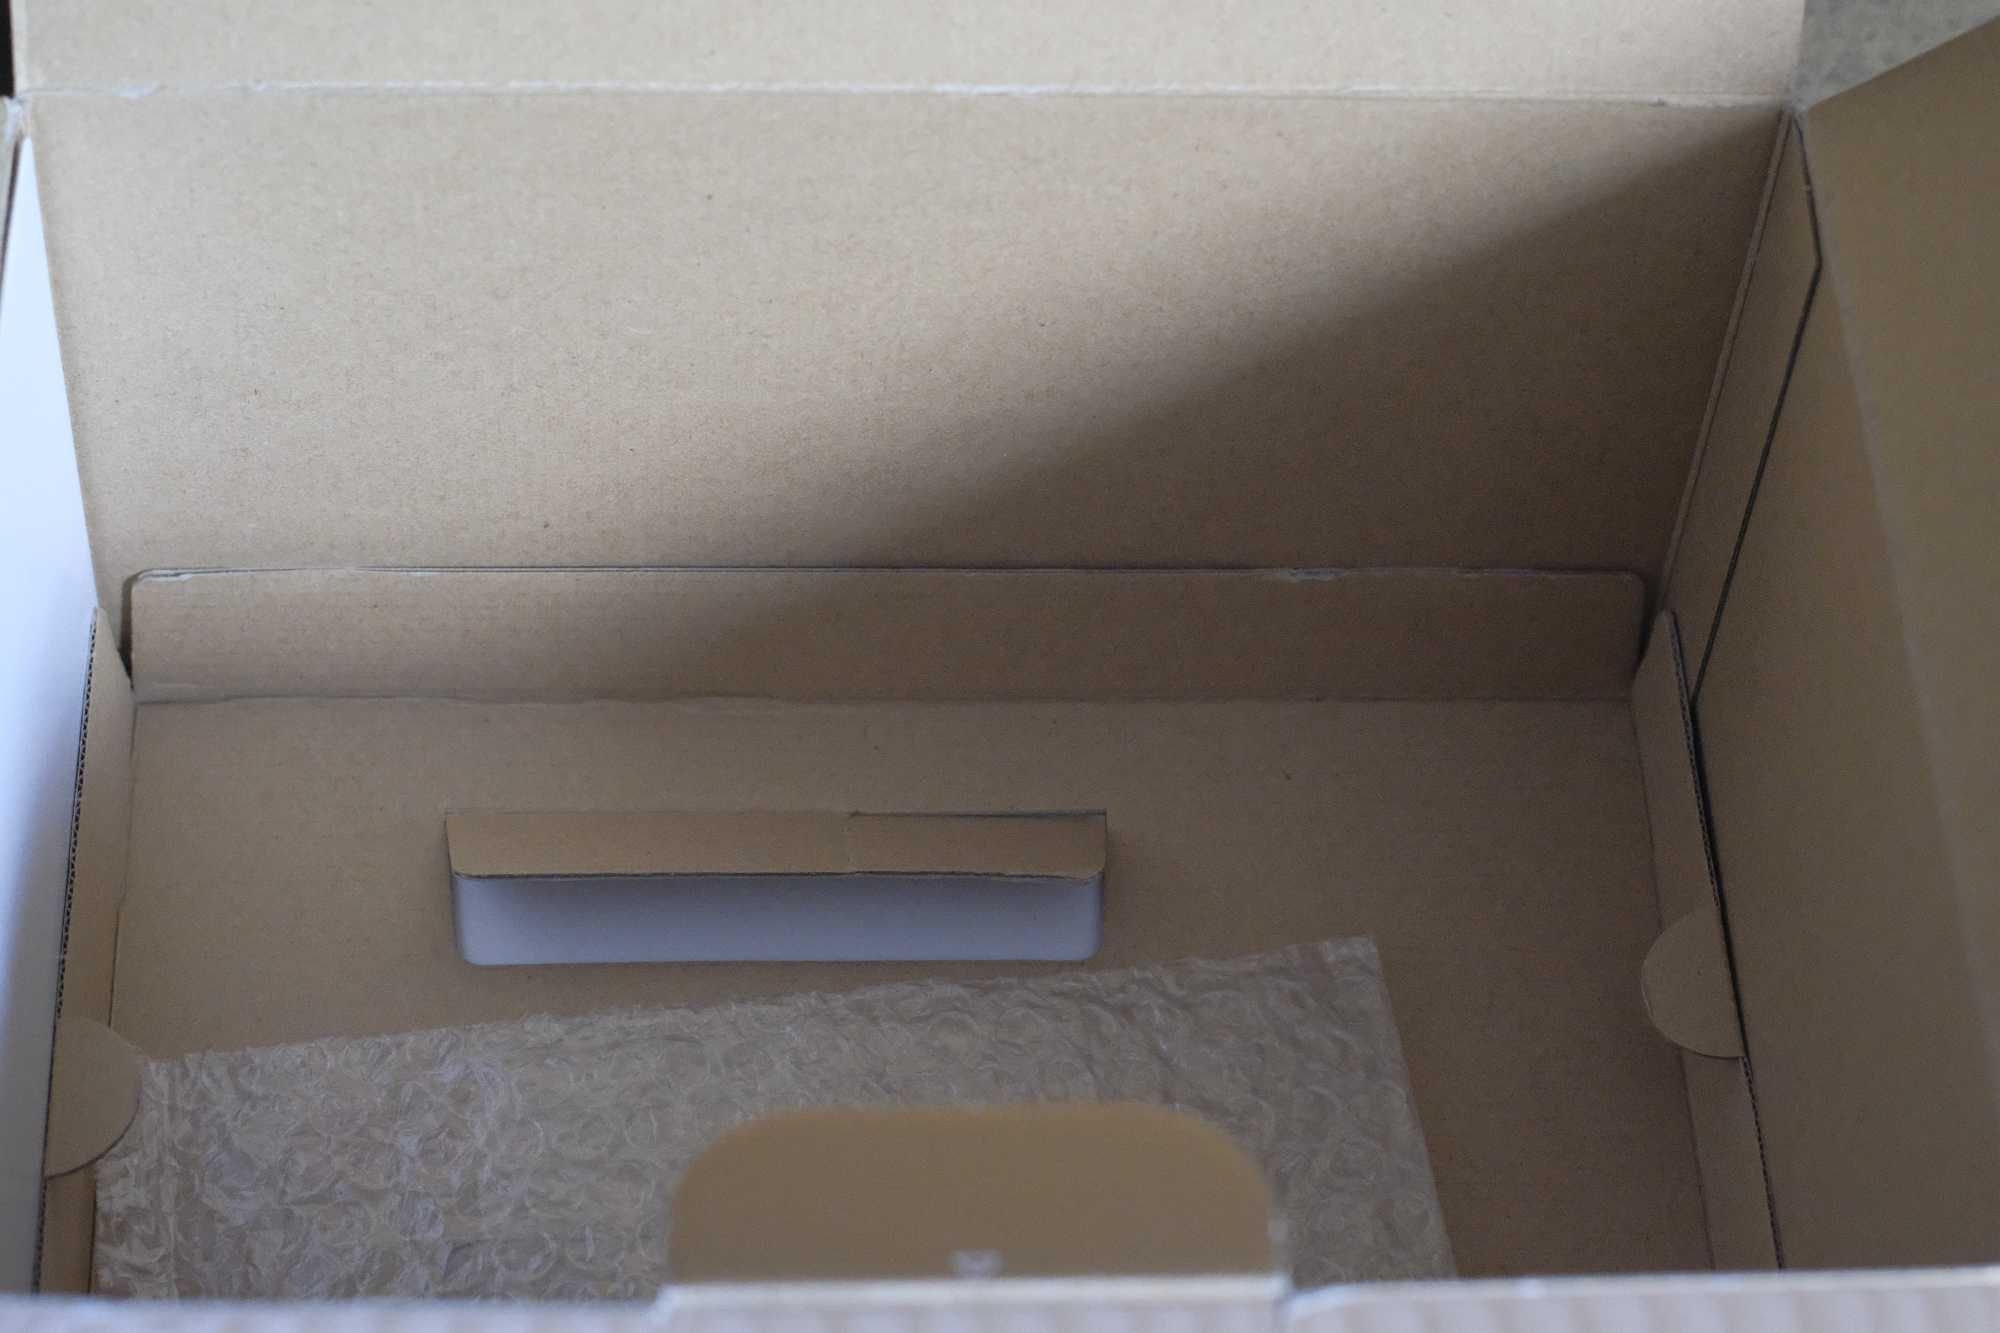 Коробка упаковка  мануал , диск NIKON D3s